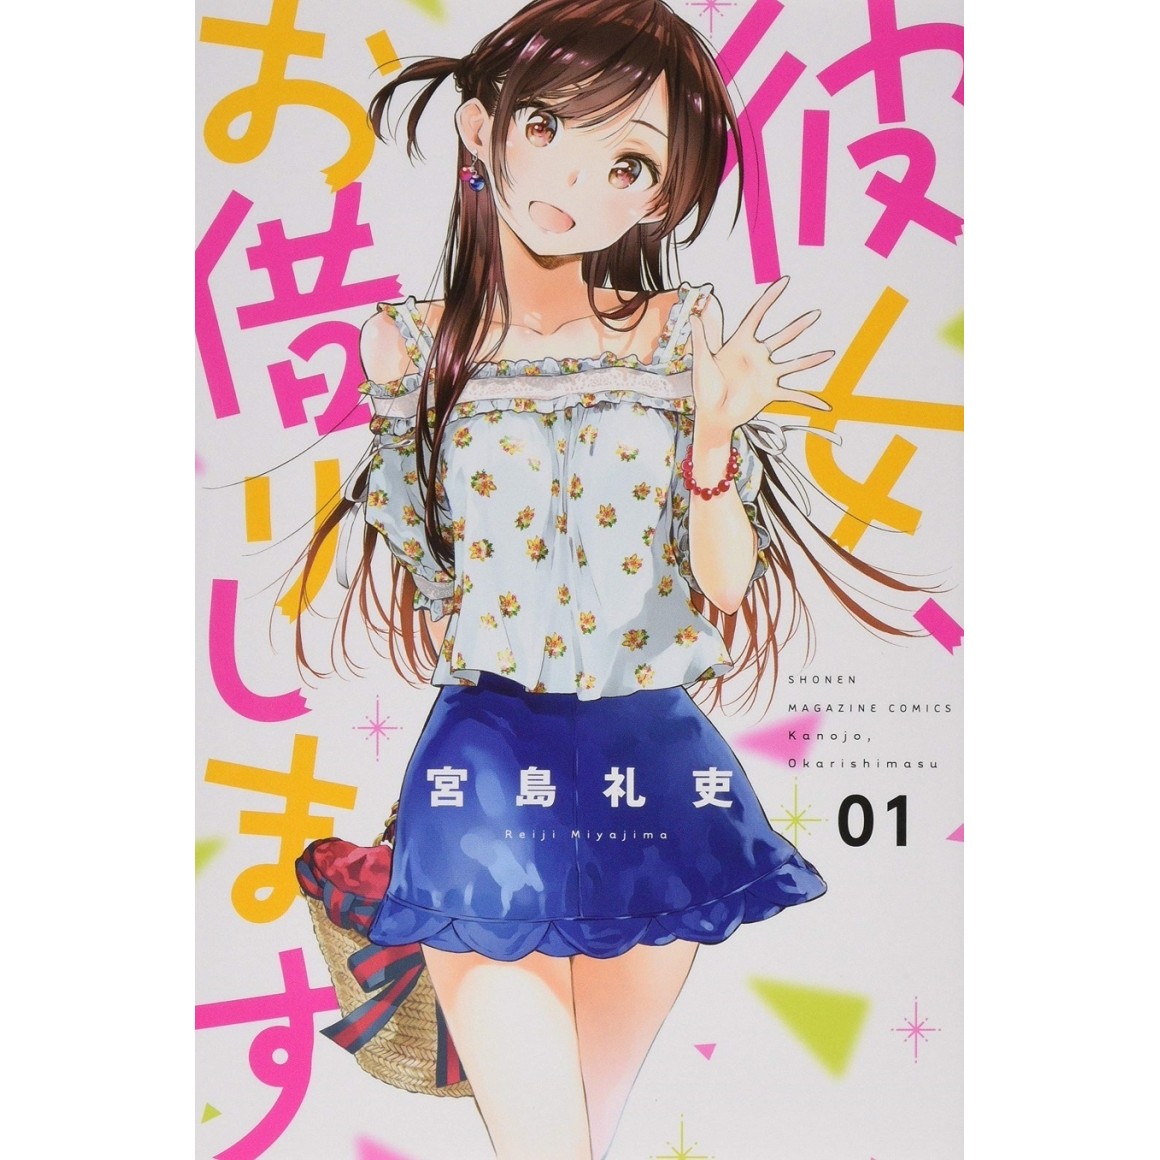 Kanojo Okarishimasu - Capítulo 1 a 217 (Atualizado) - MangAnime - Download  baixar Mangás e HQs em Kindle .mobi e outros formatos .pdf mangás para  kindle